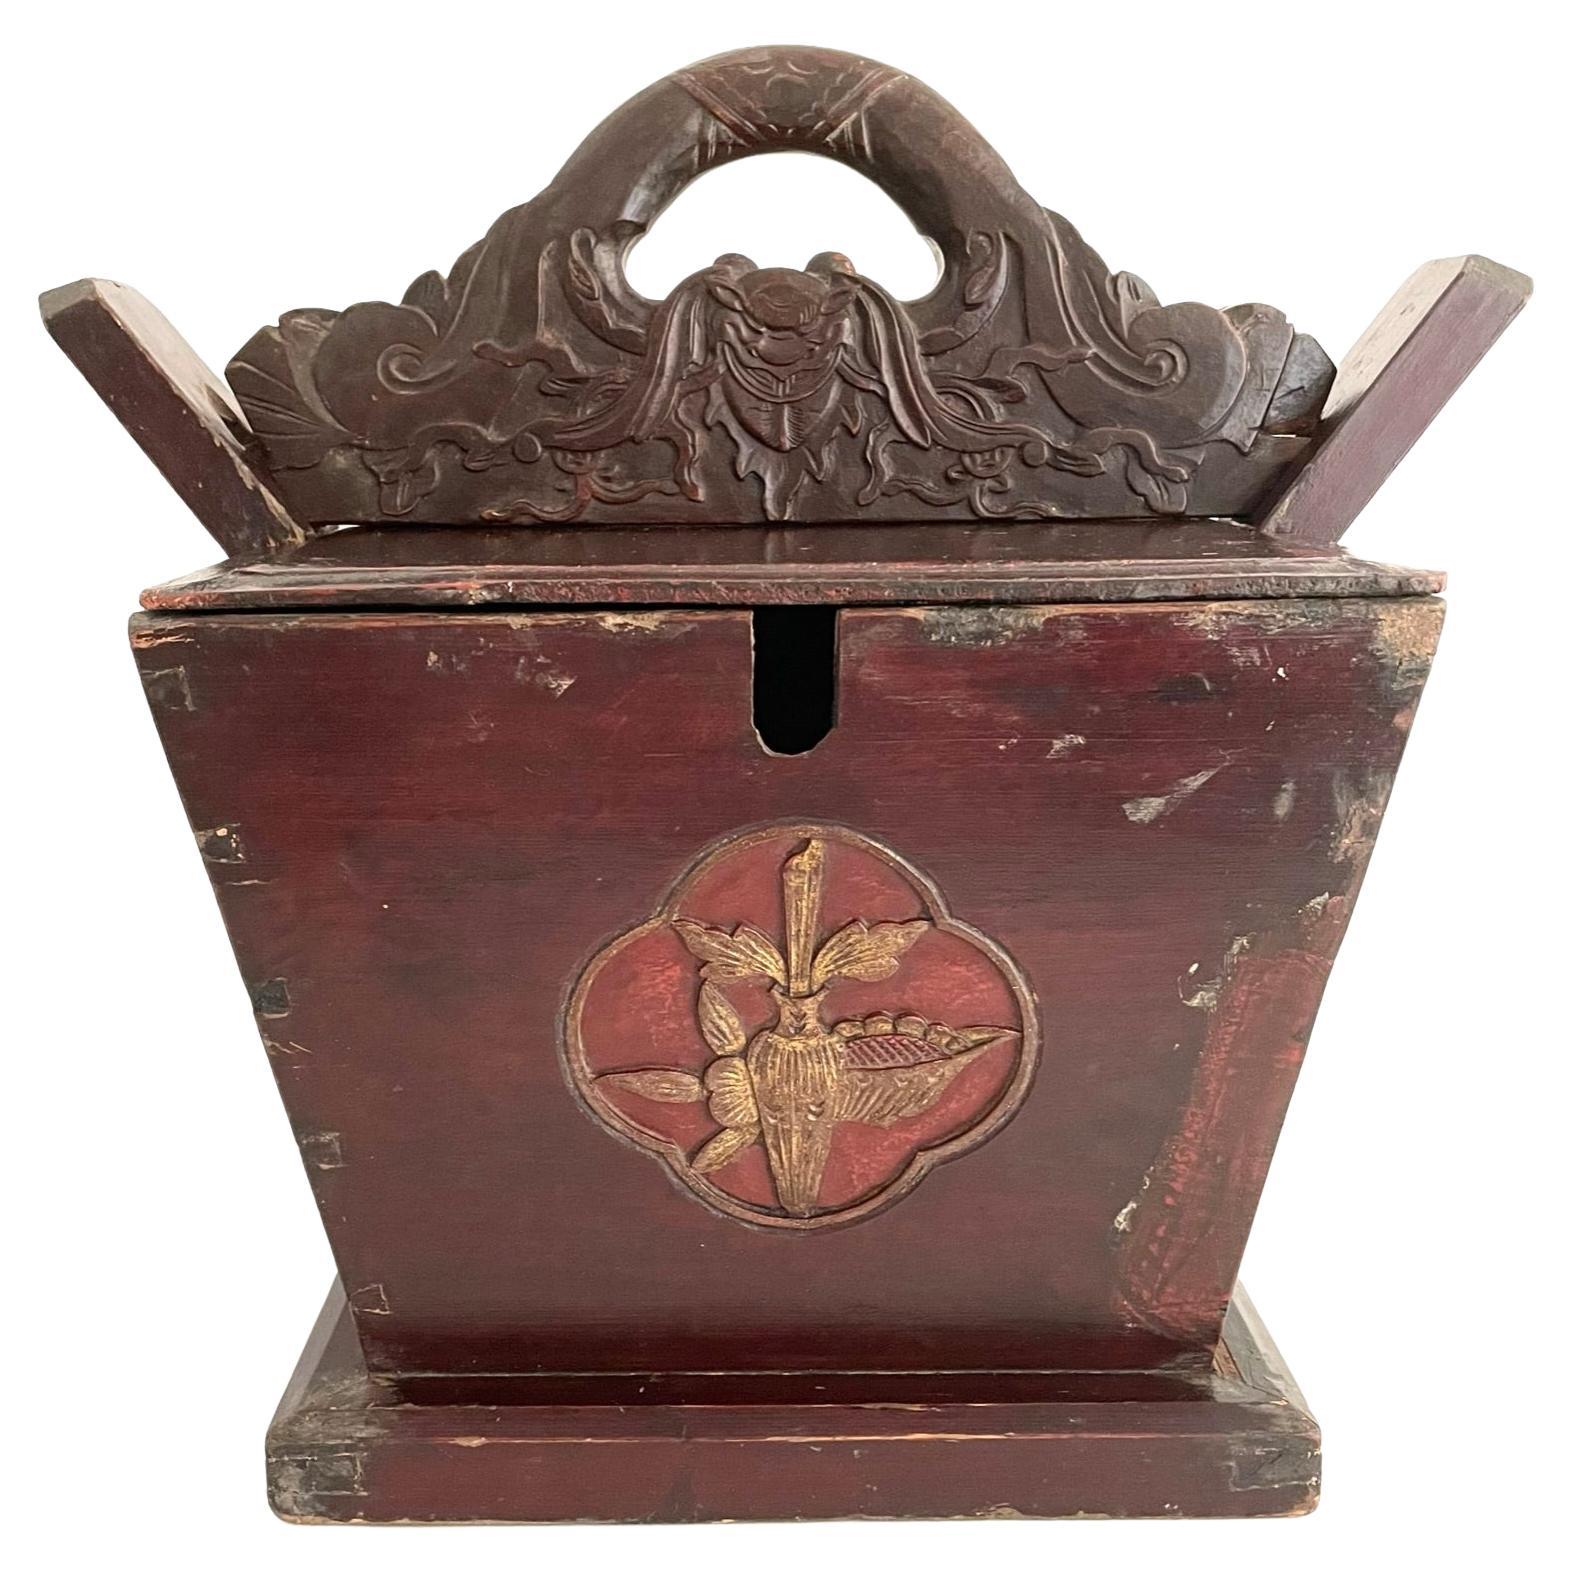 Grande boîte à thé sculptée chinoise du 19ème siècle